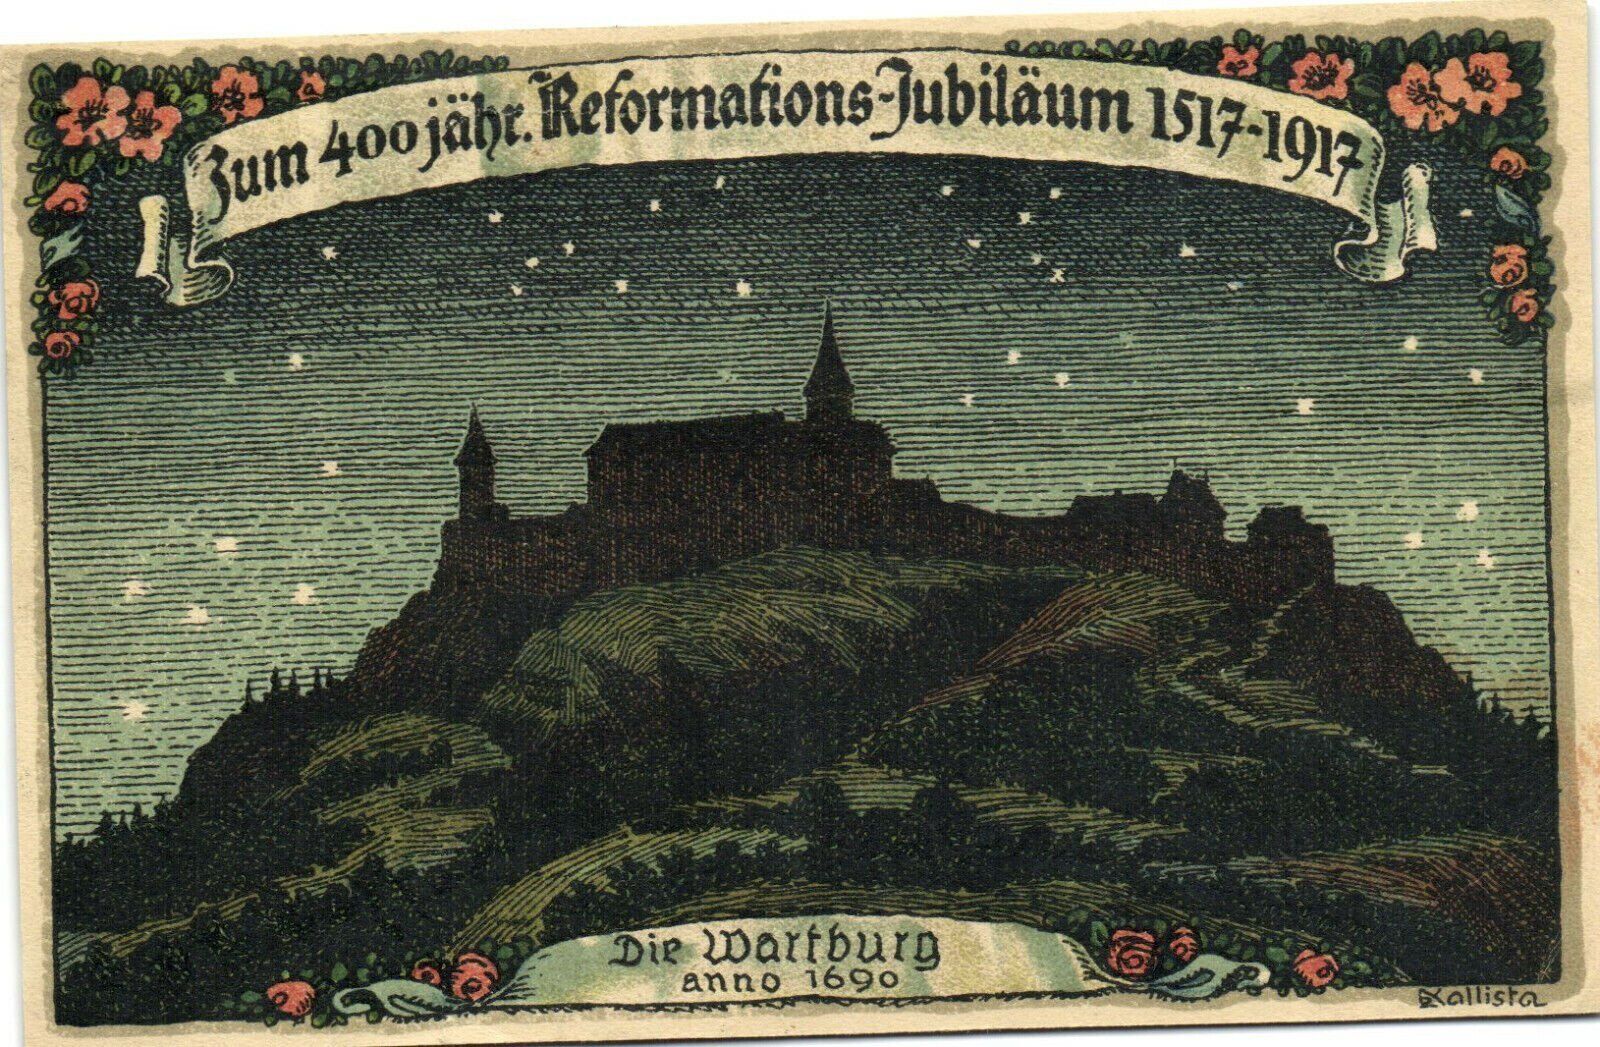 PC GERMANY, DIE WARTBURG ANNO 1690, Vintage Postcard (b31777)